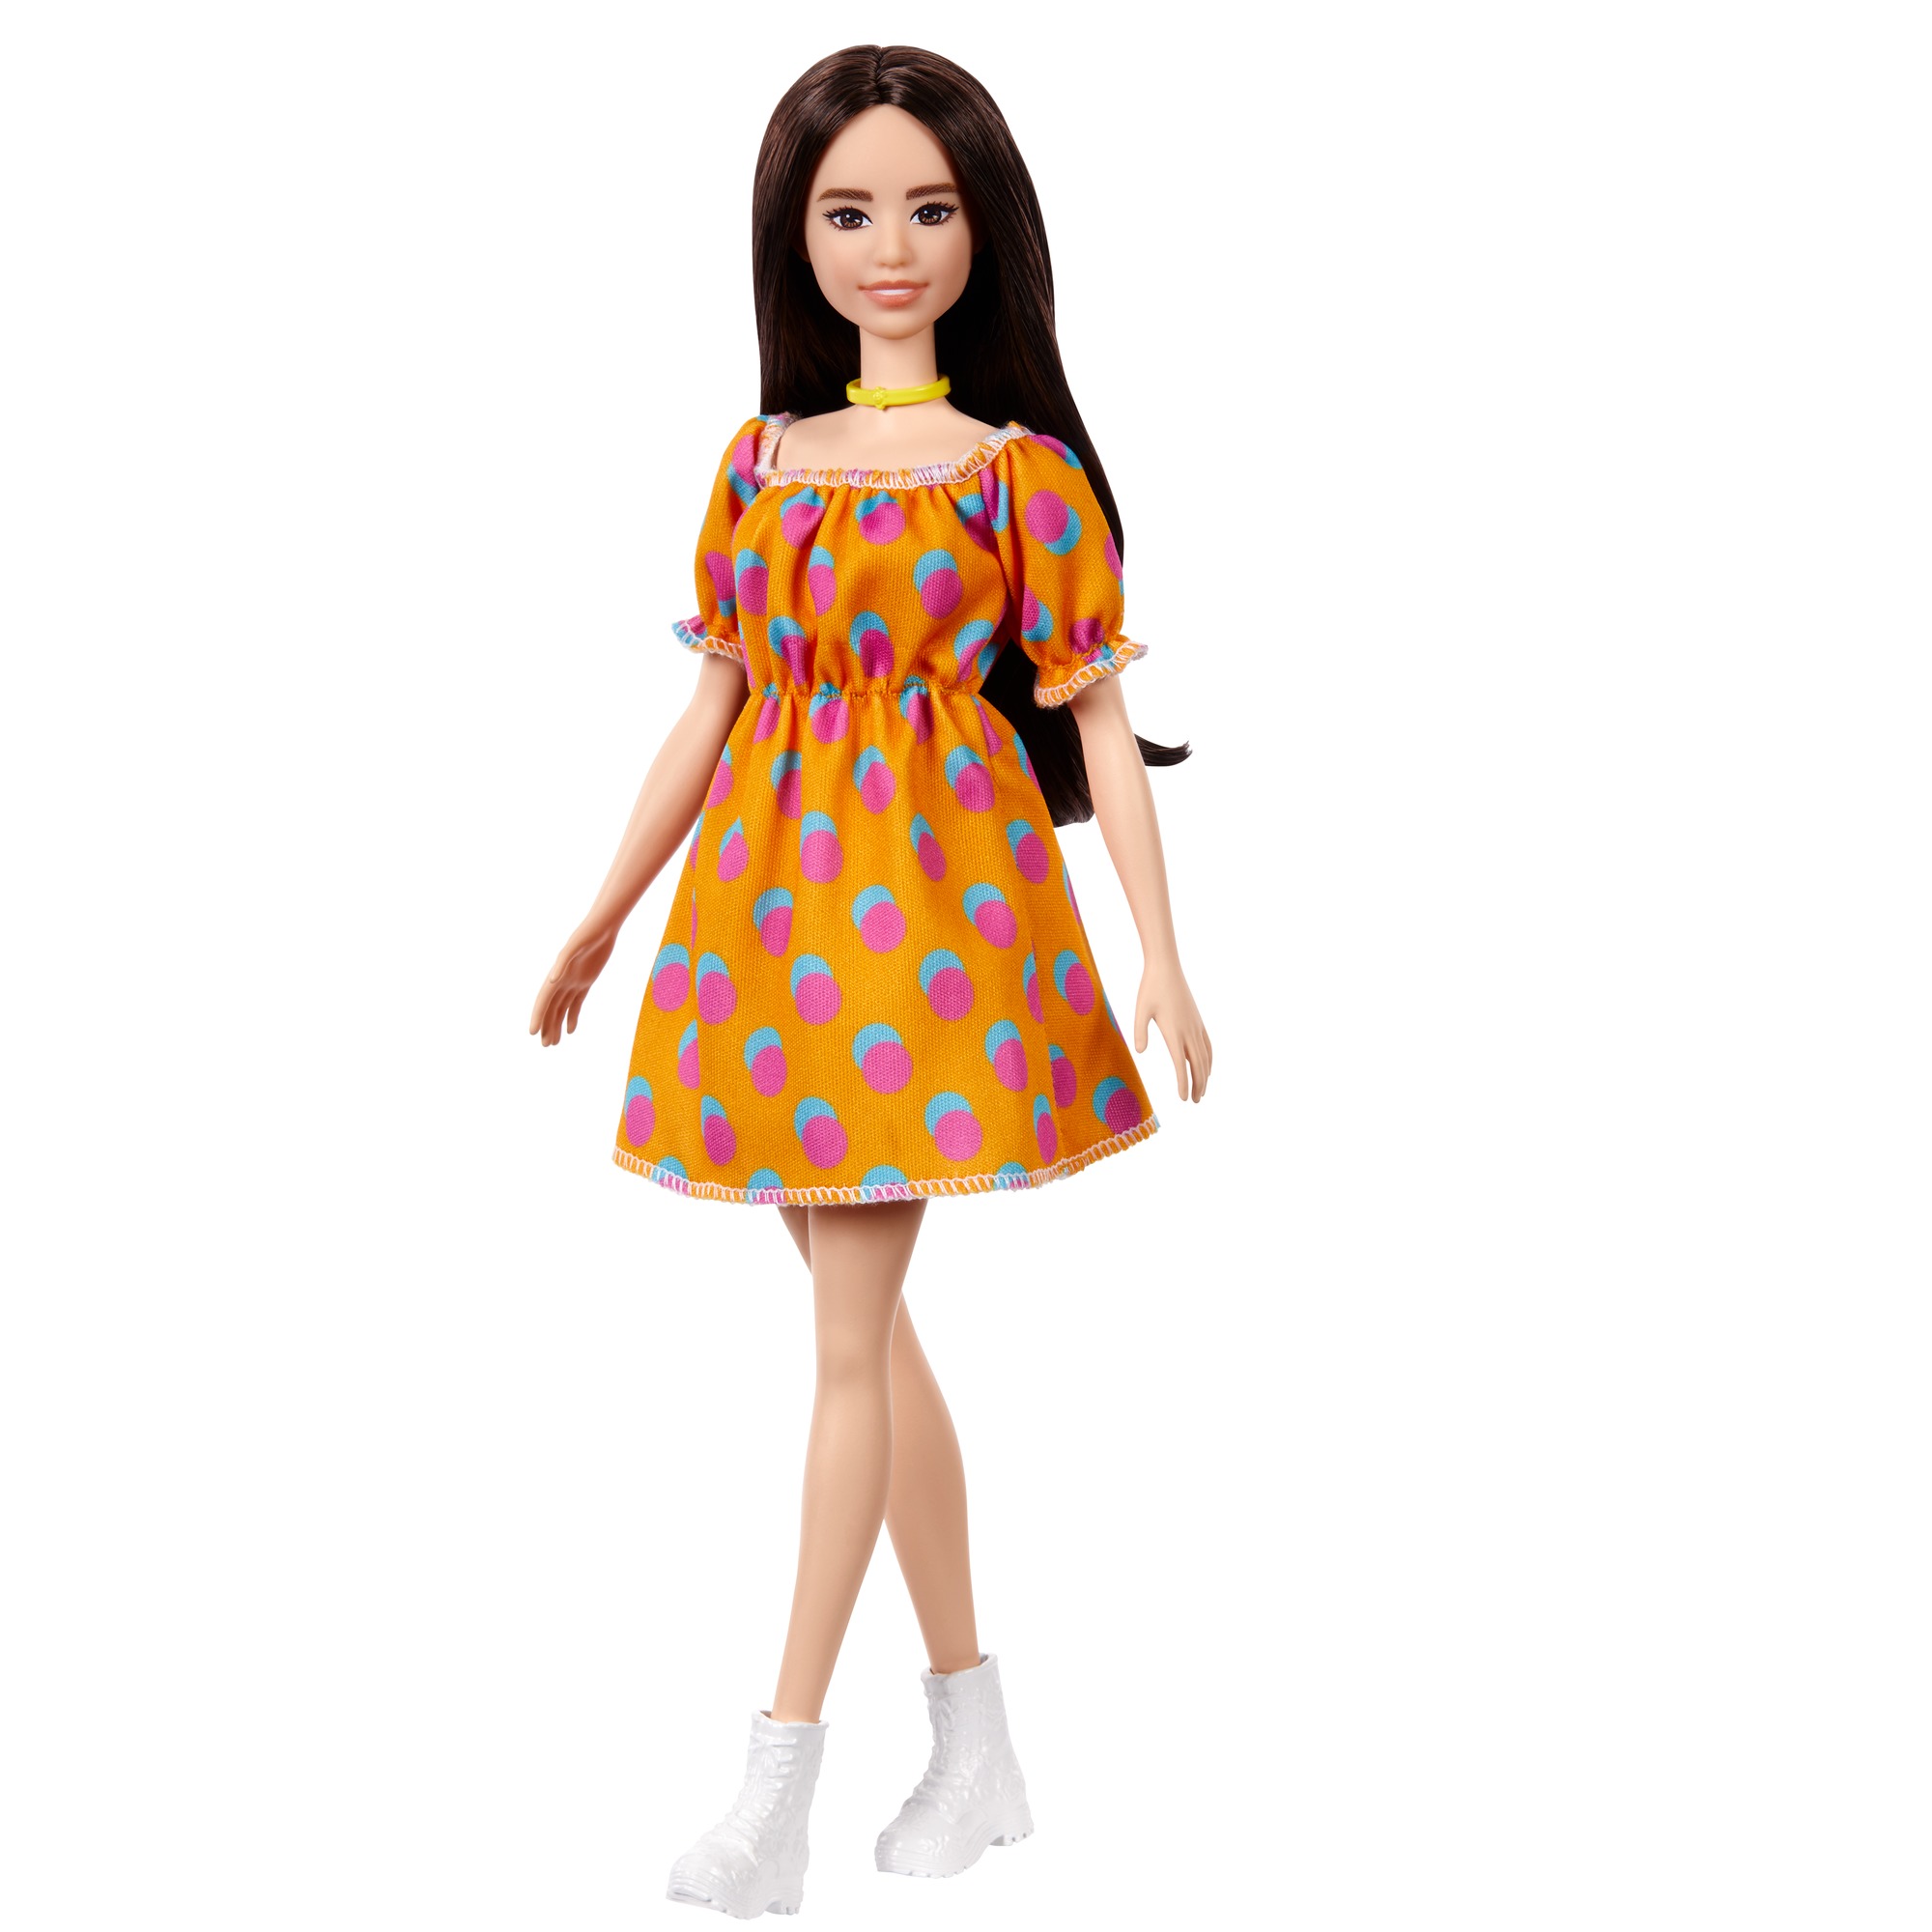 Лялька Barbie Модниця у сукні в горошок (GRB52) - фото 1